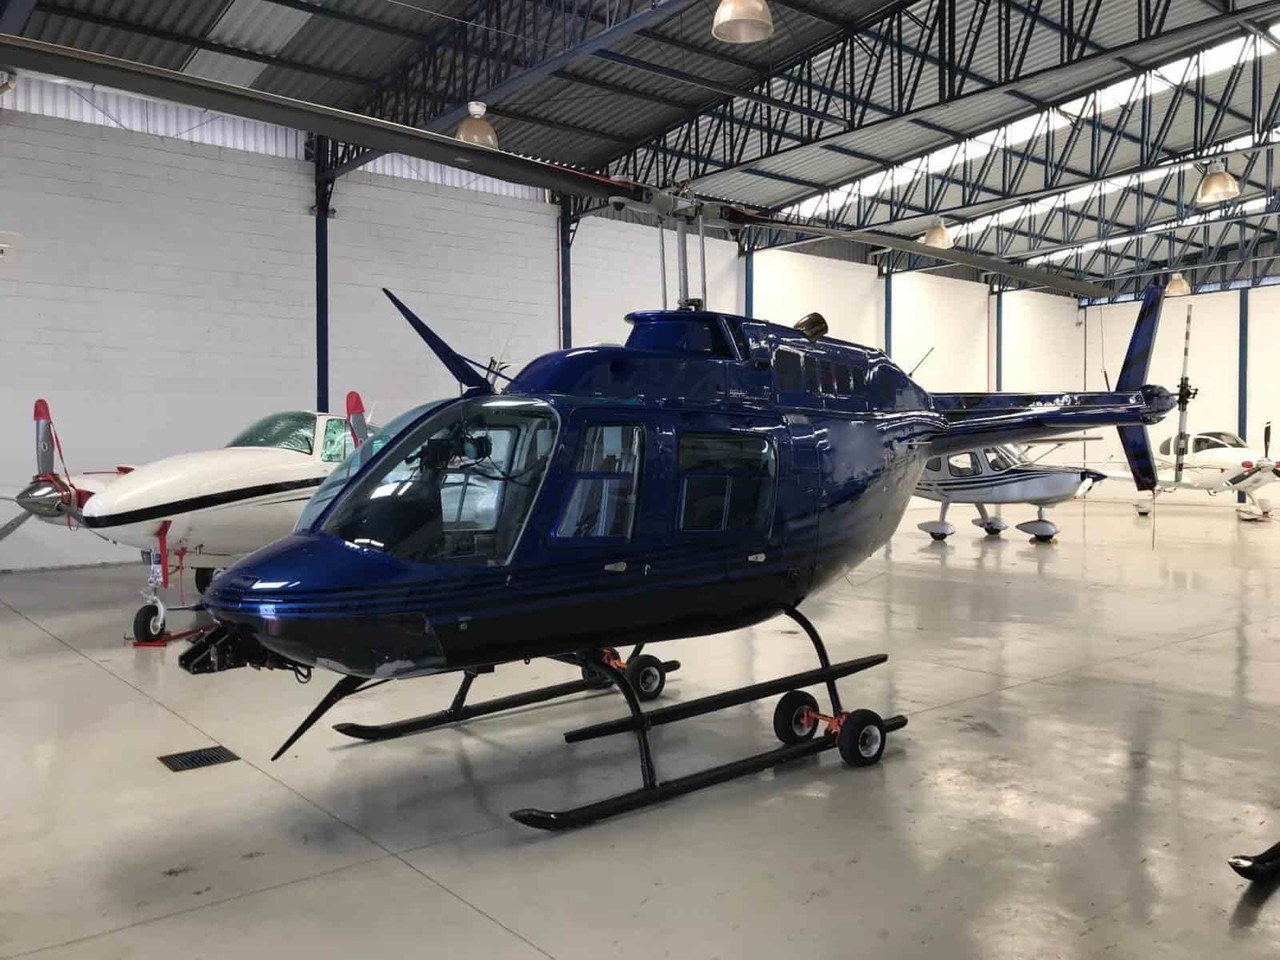 Roban helicóptero Bell 206 de hangar del AICM